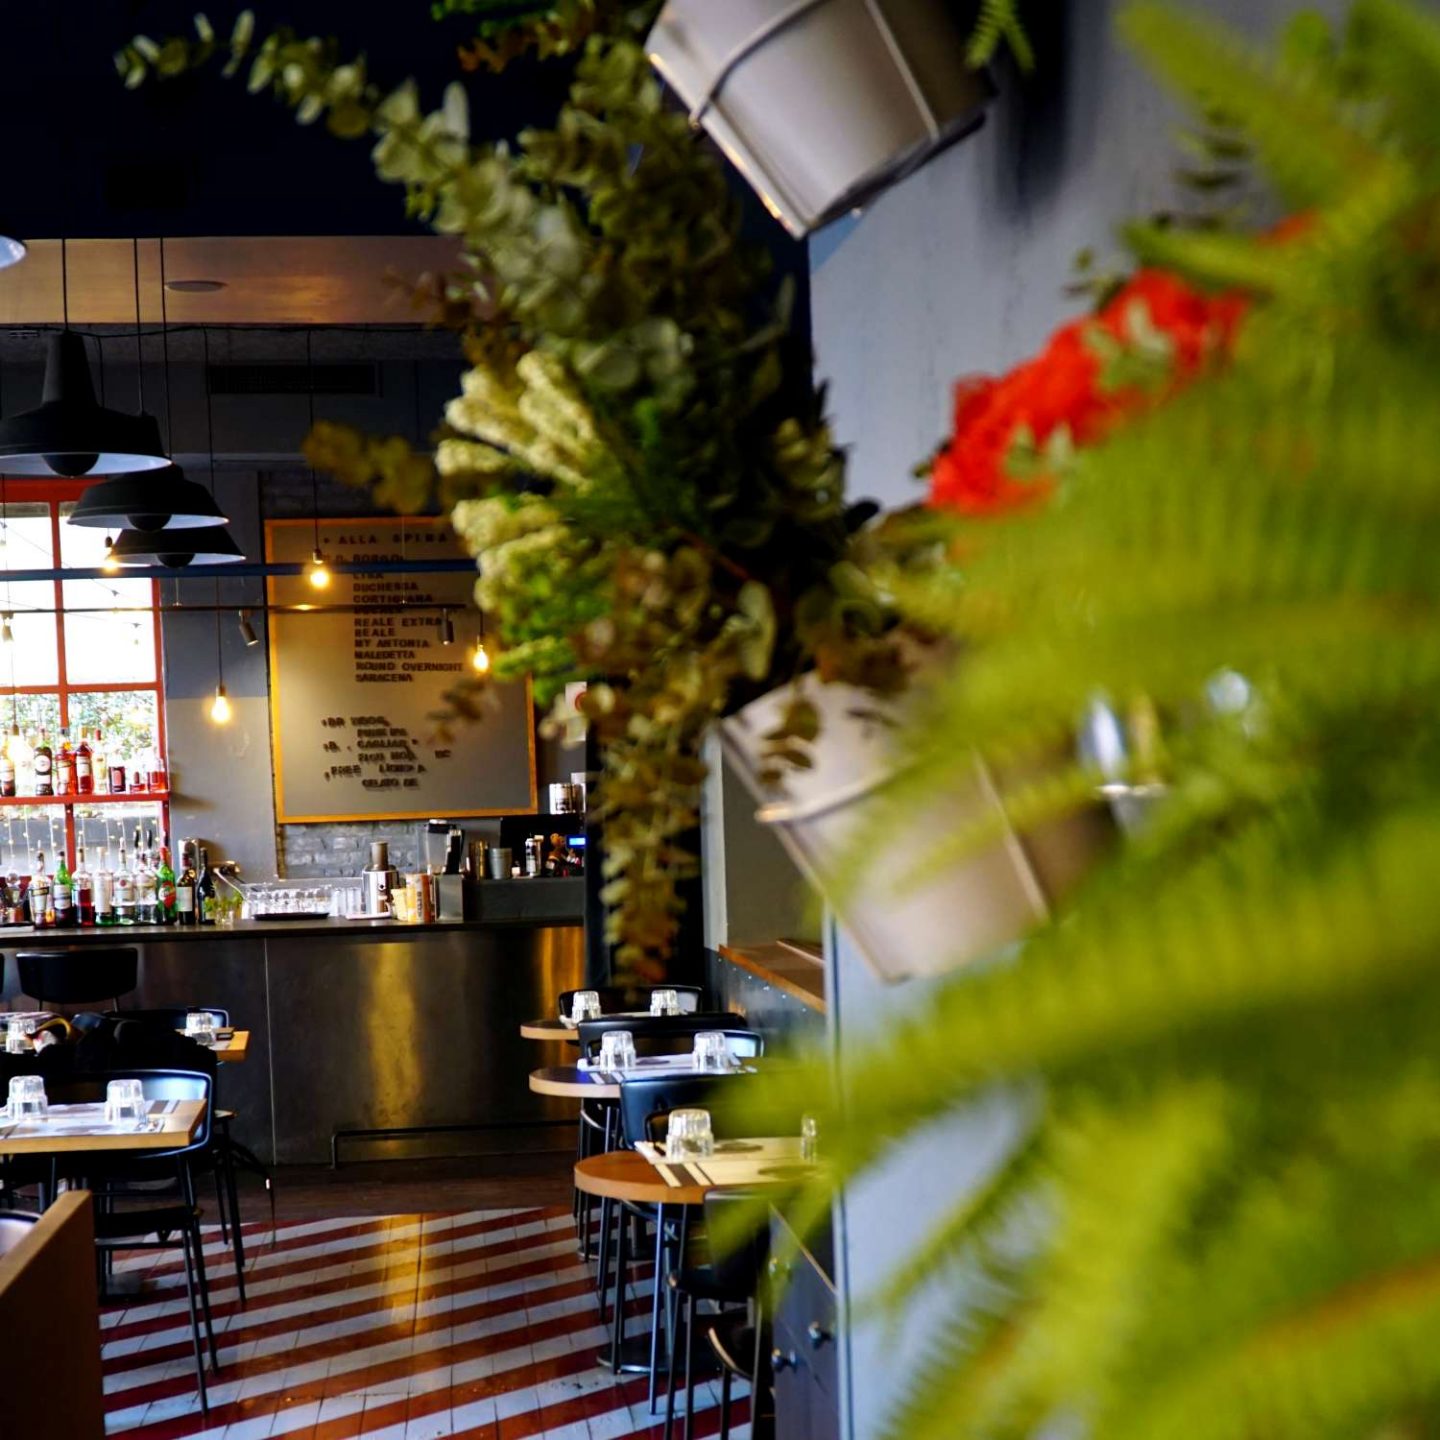 sala ristorante con tavoli di legno, pavimento a righe bianche e rosse, piante e fiori sulla parete destra, In fondo bancone con drink.